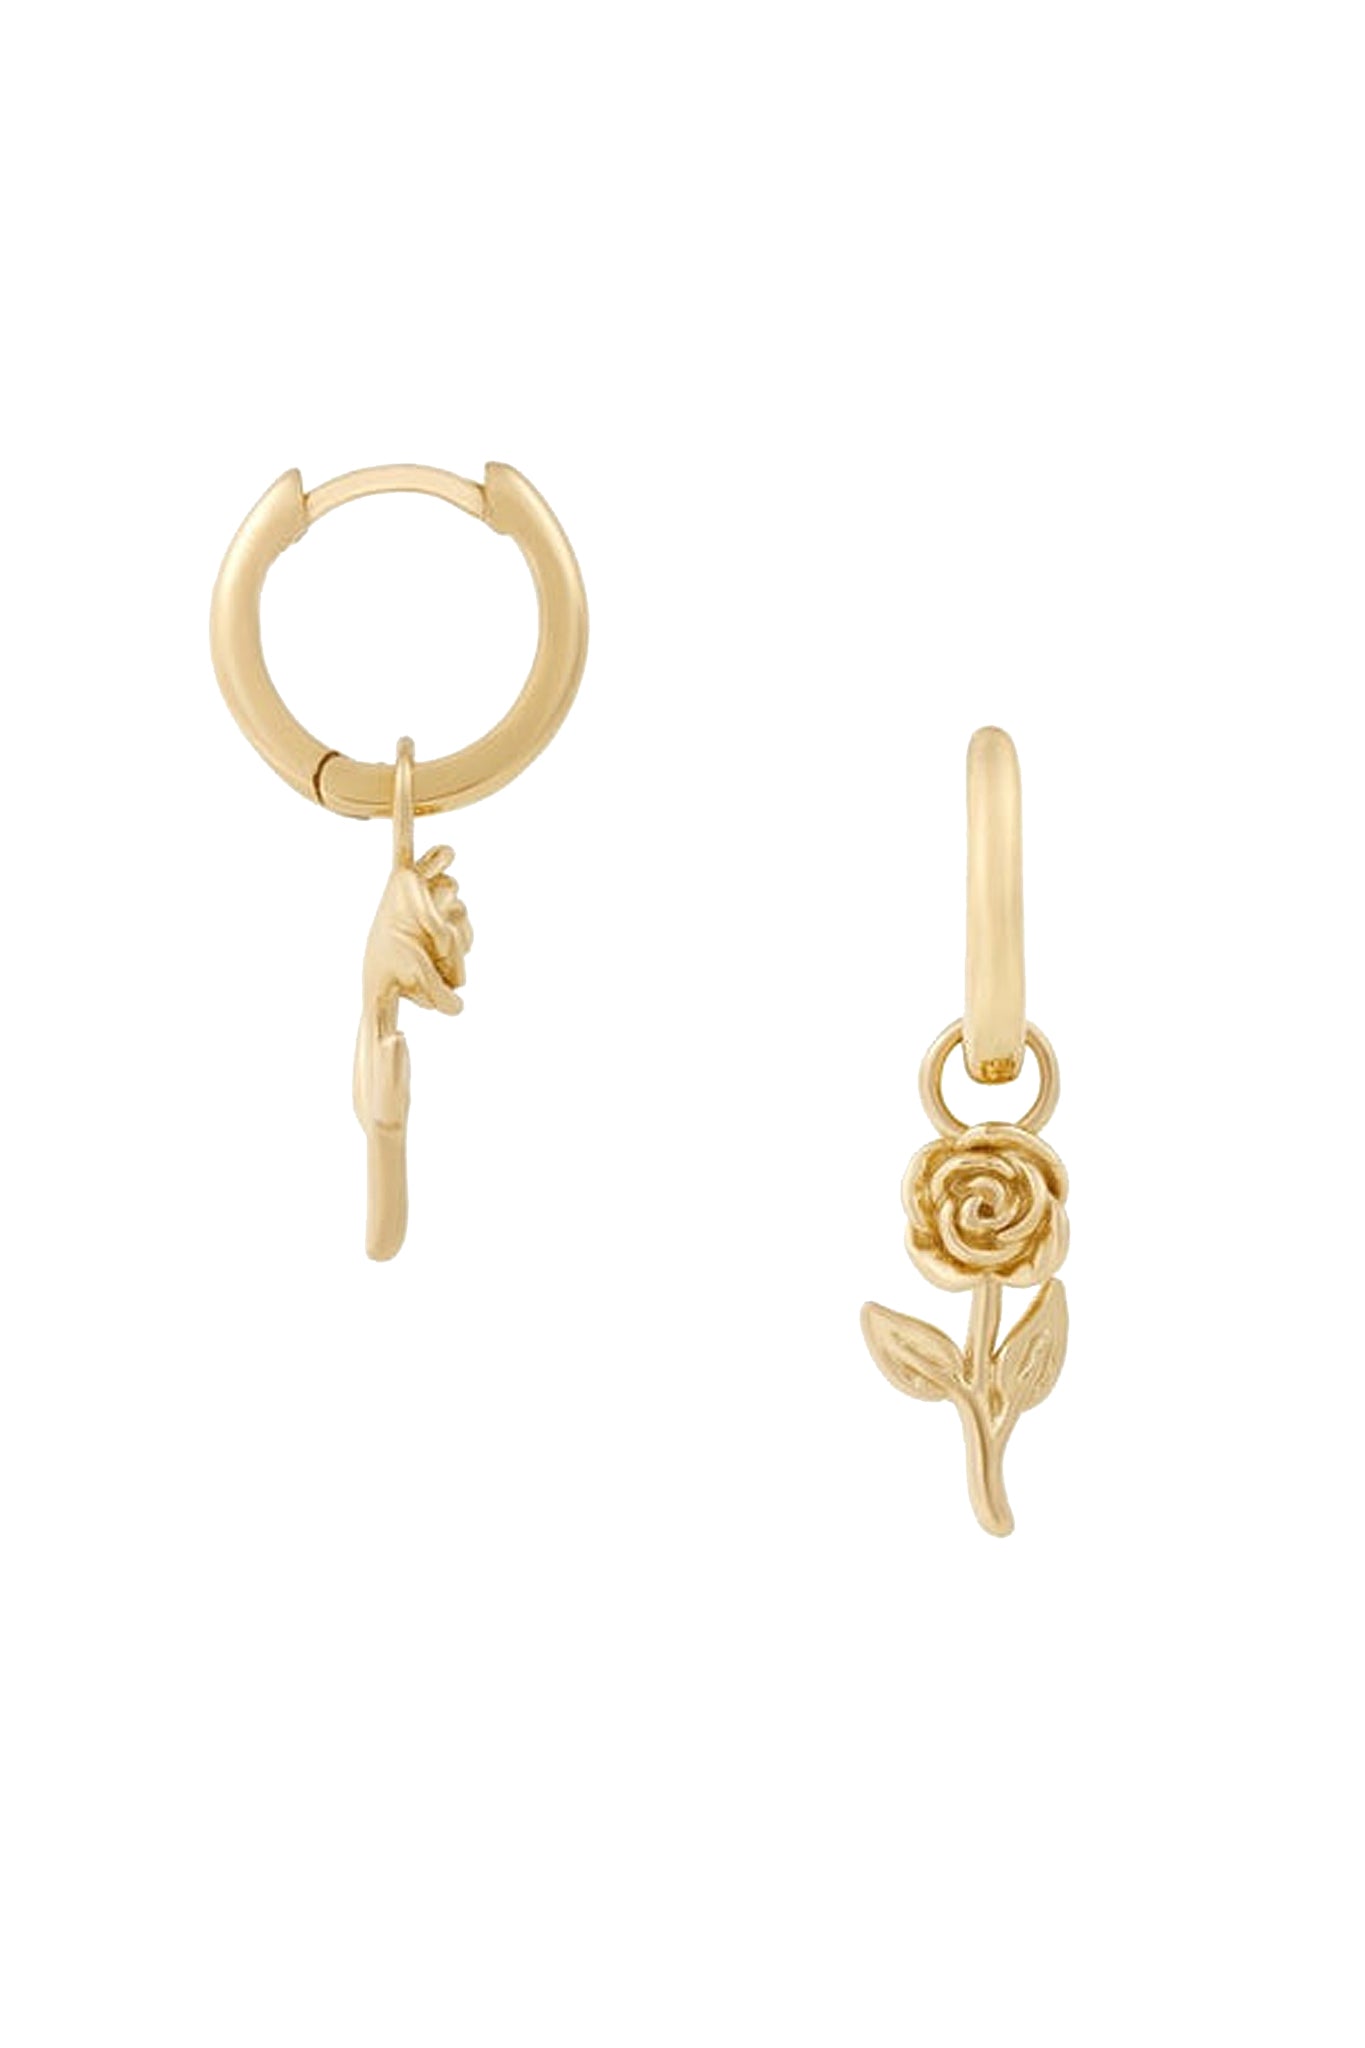 Five and Two Penny Flower Charm Huggie Hoop Earrings in 14k Gold Vermeil